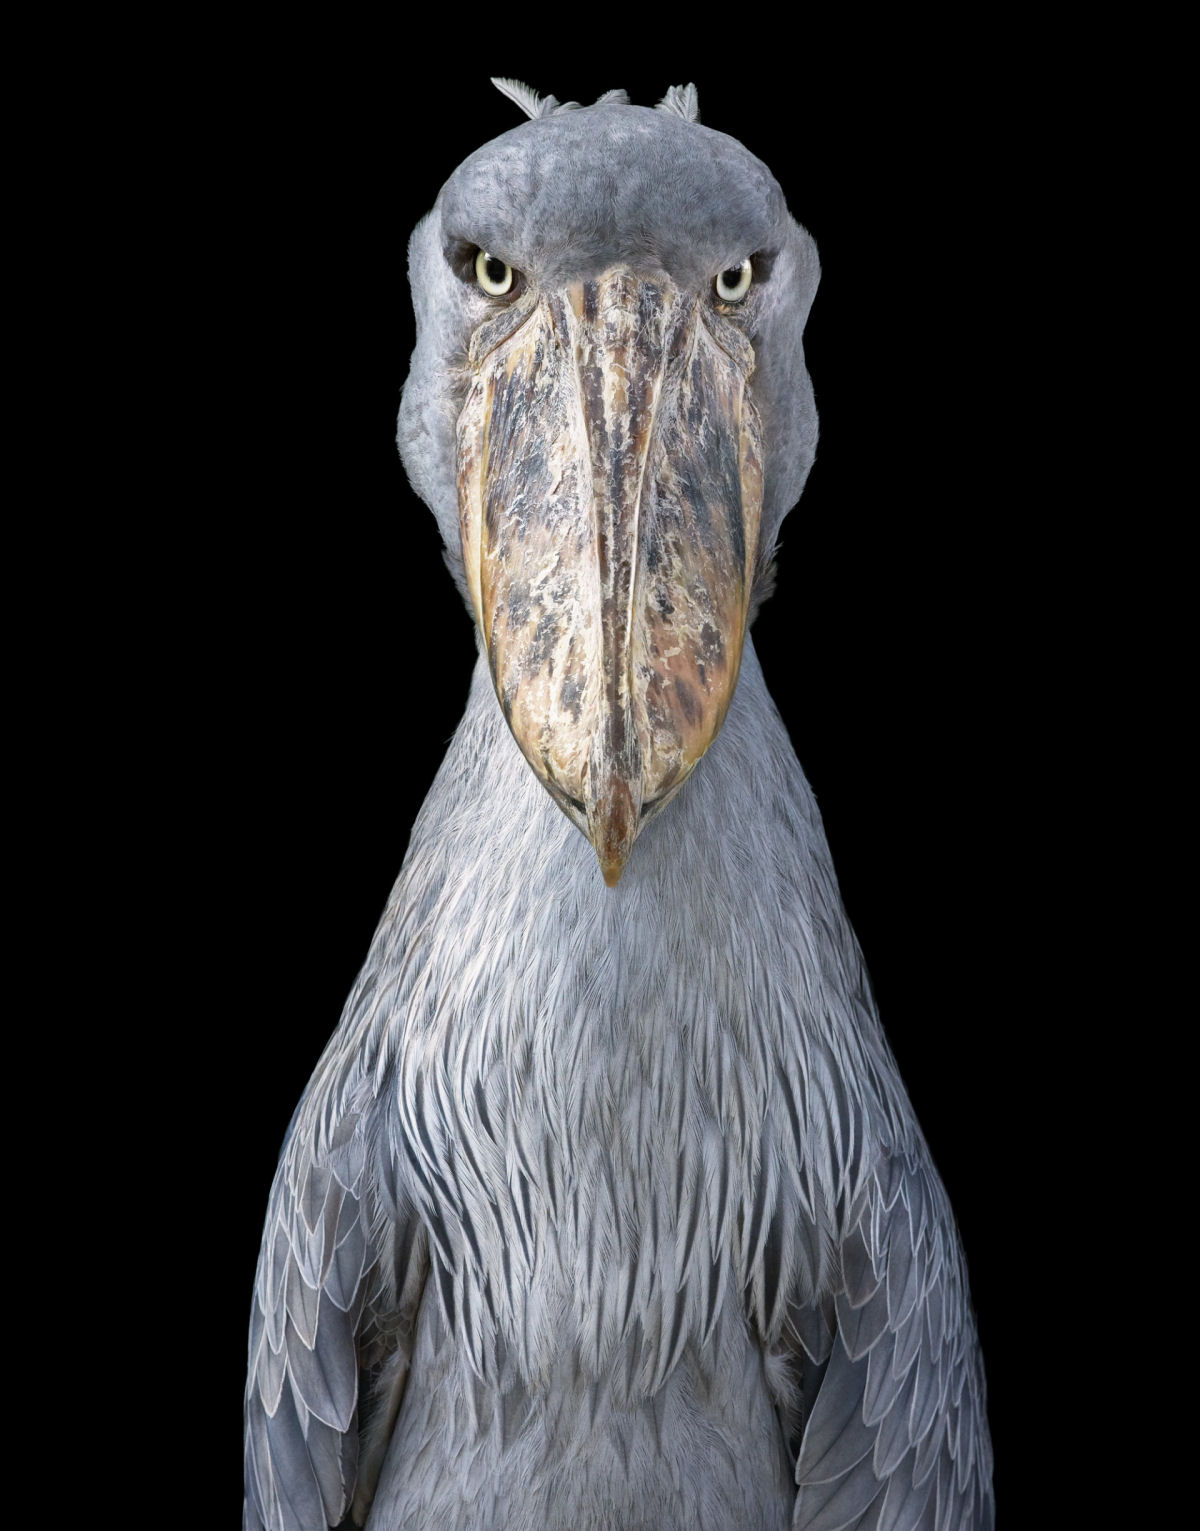 Fotógrafo londrino destaca pássaros incomuns e ameaçados de extinção em retratos impressionantes 08